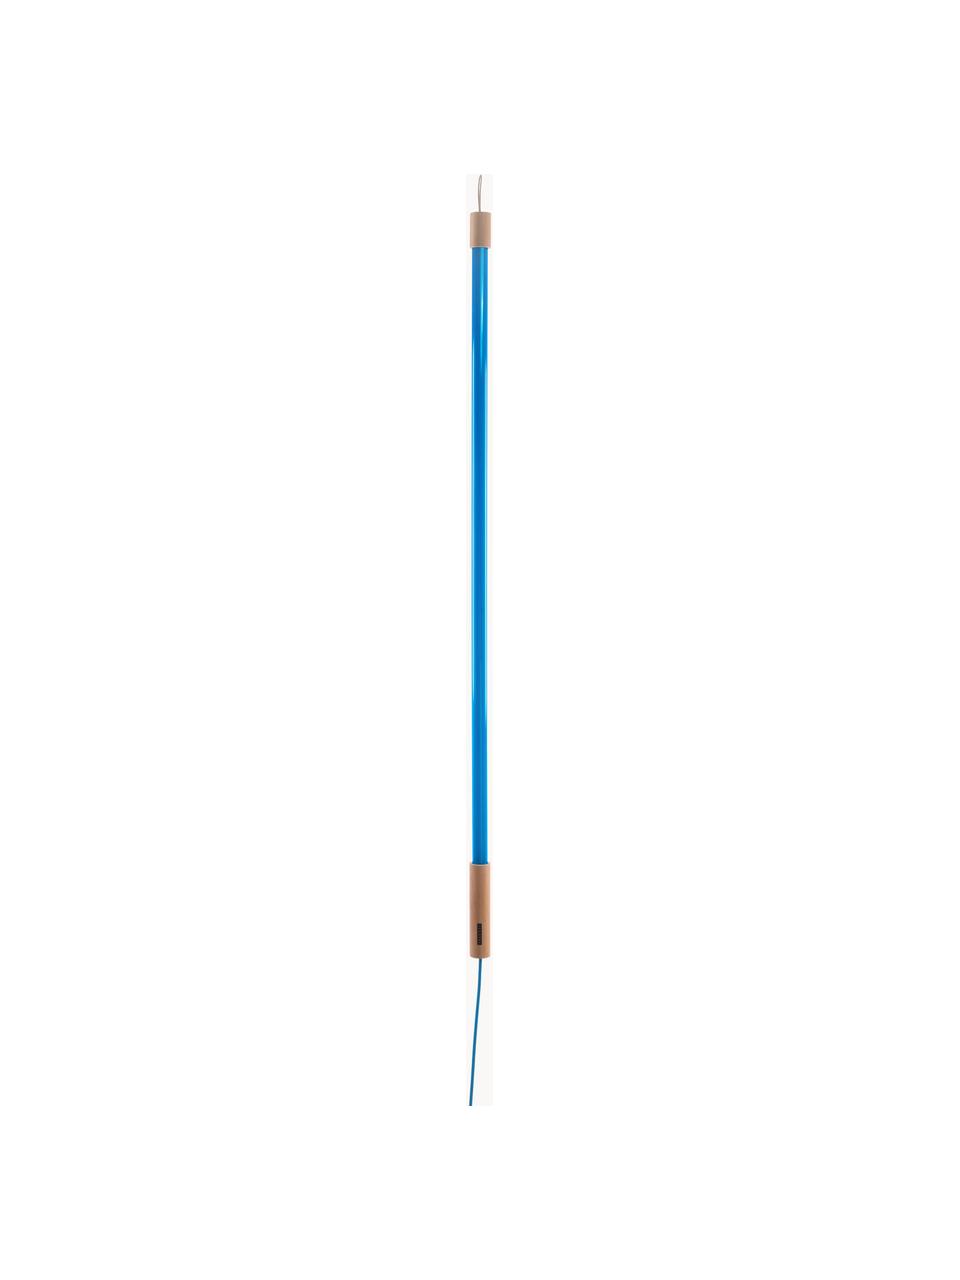 LED-Wandleuchte Linea mit Stecker, Dekor: Holz, Blau, Ø 4 x H 135 cm